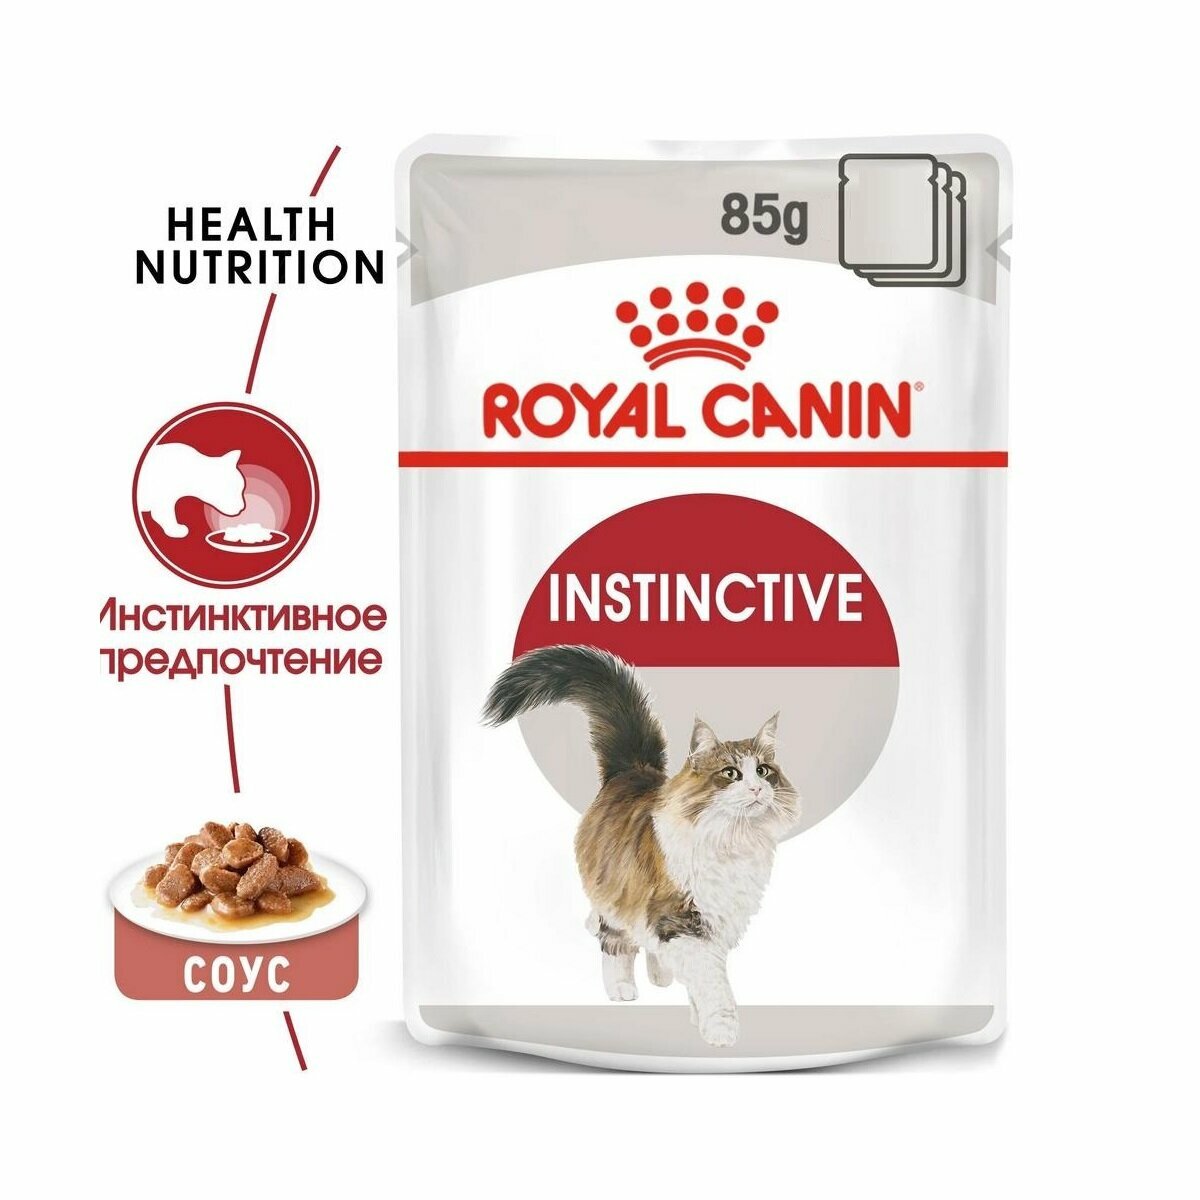 Royal Canin Instinctive кусочки в соусе для кошек старше 1 года, 85 г - фото №7